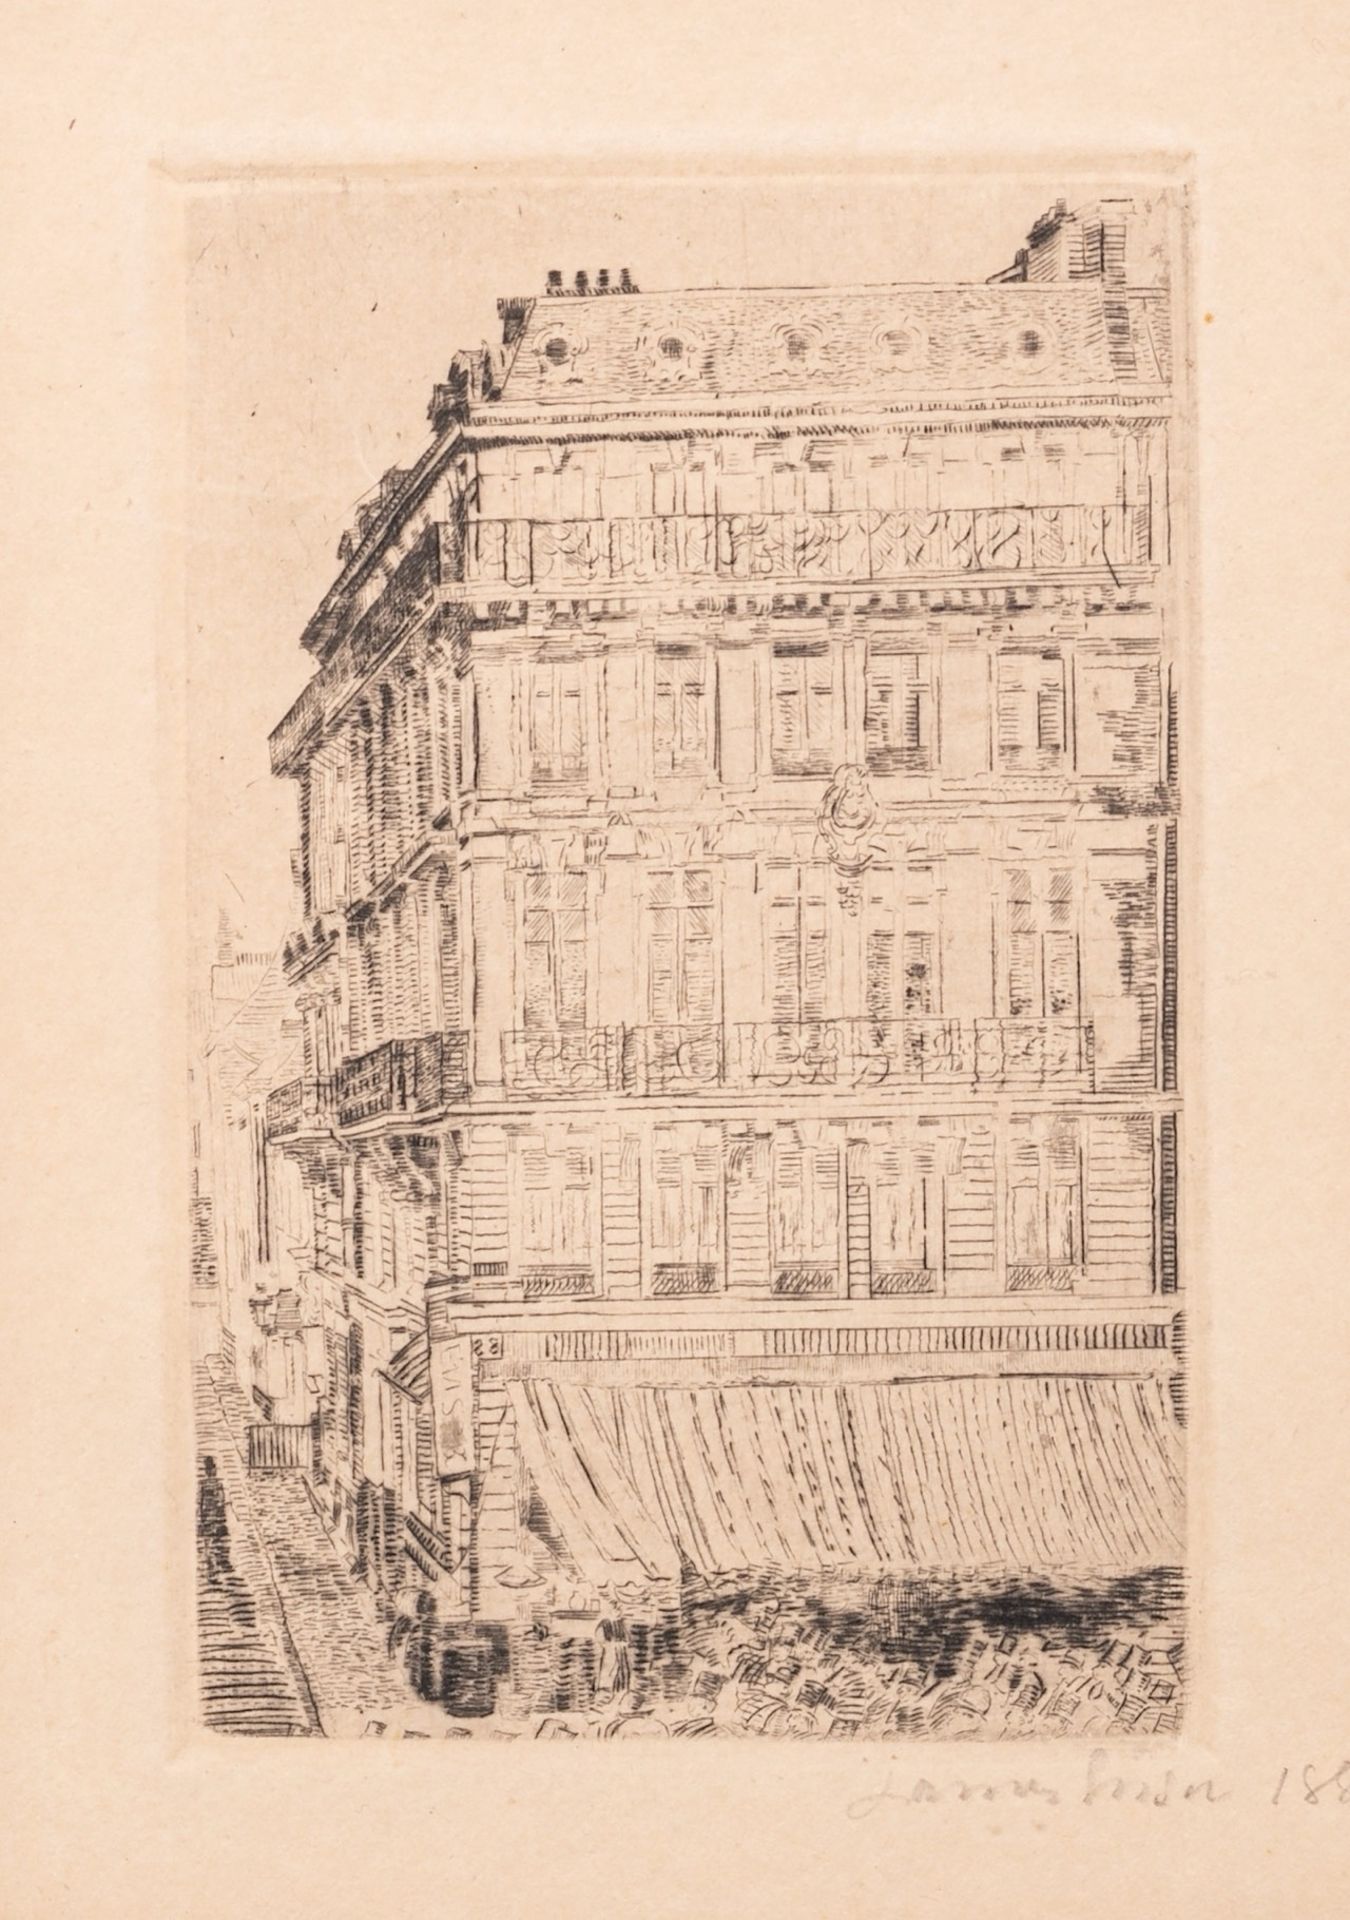 James Ensor (1860-1949), 'House on the Boulevard Anspach' ('Maison du Boulevard Anspach'), 1888, dry